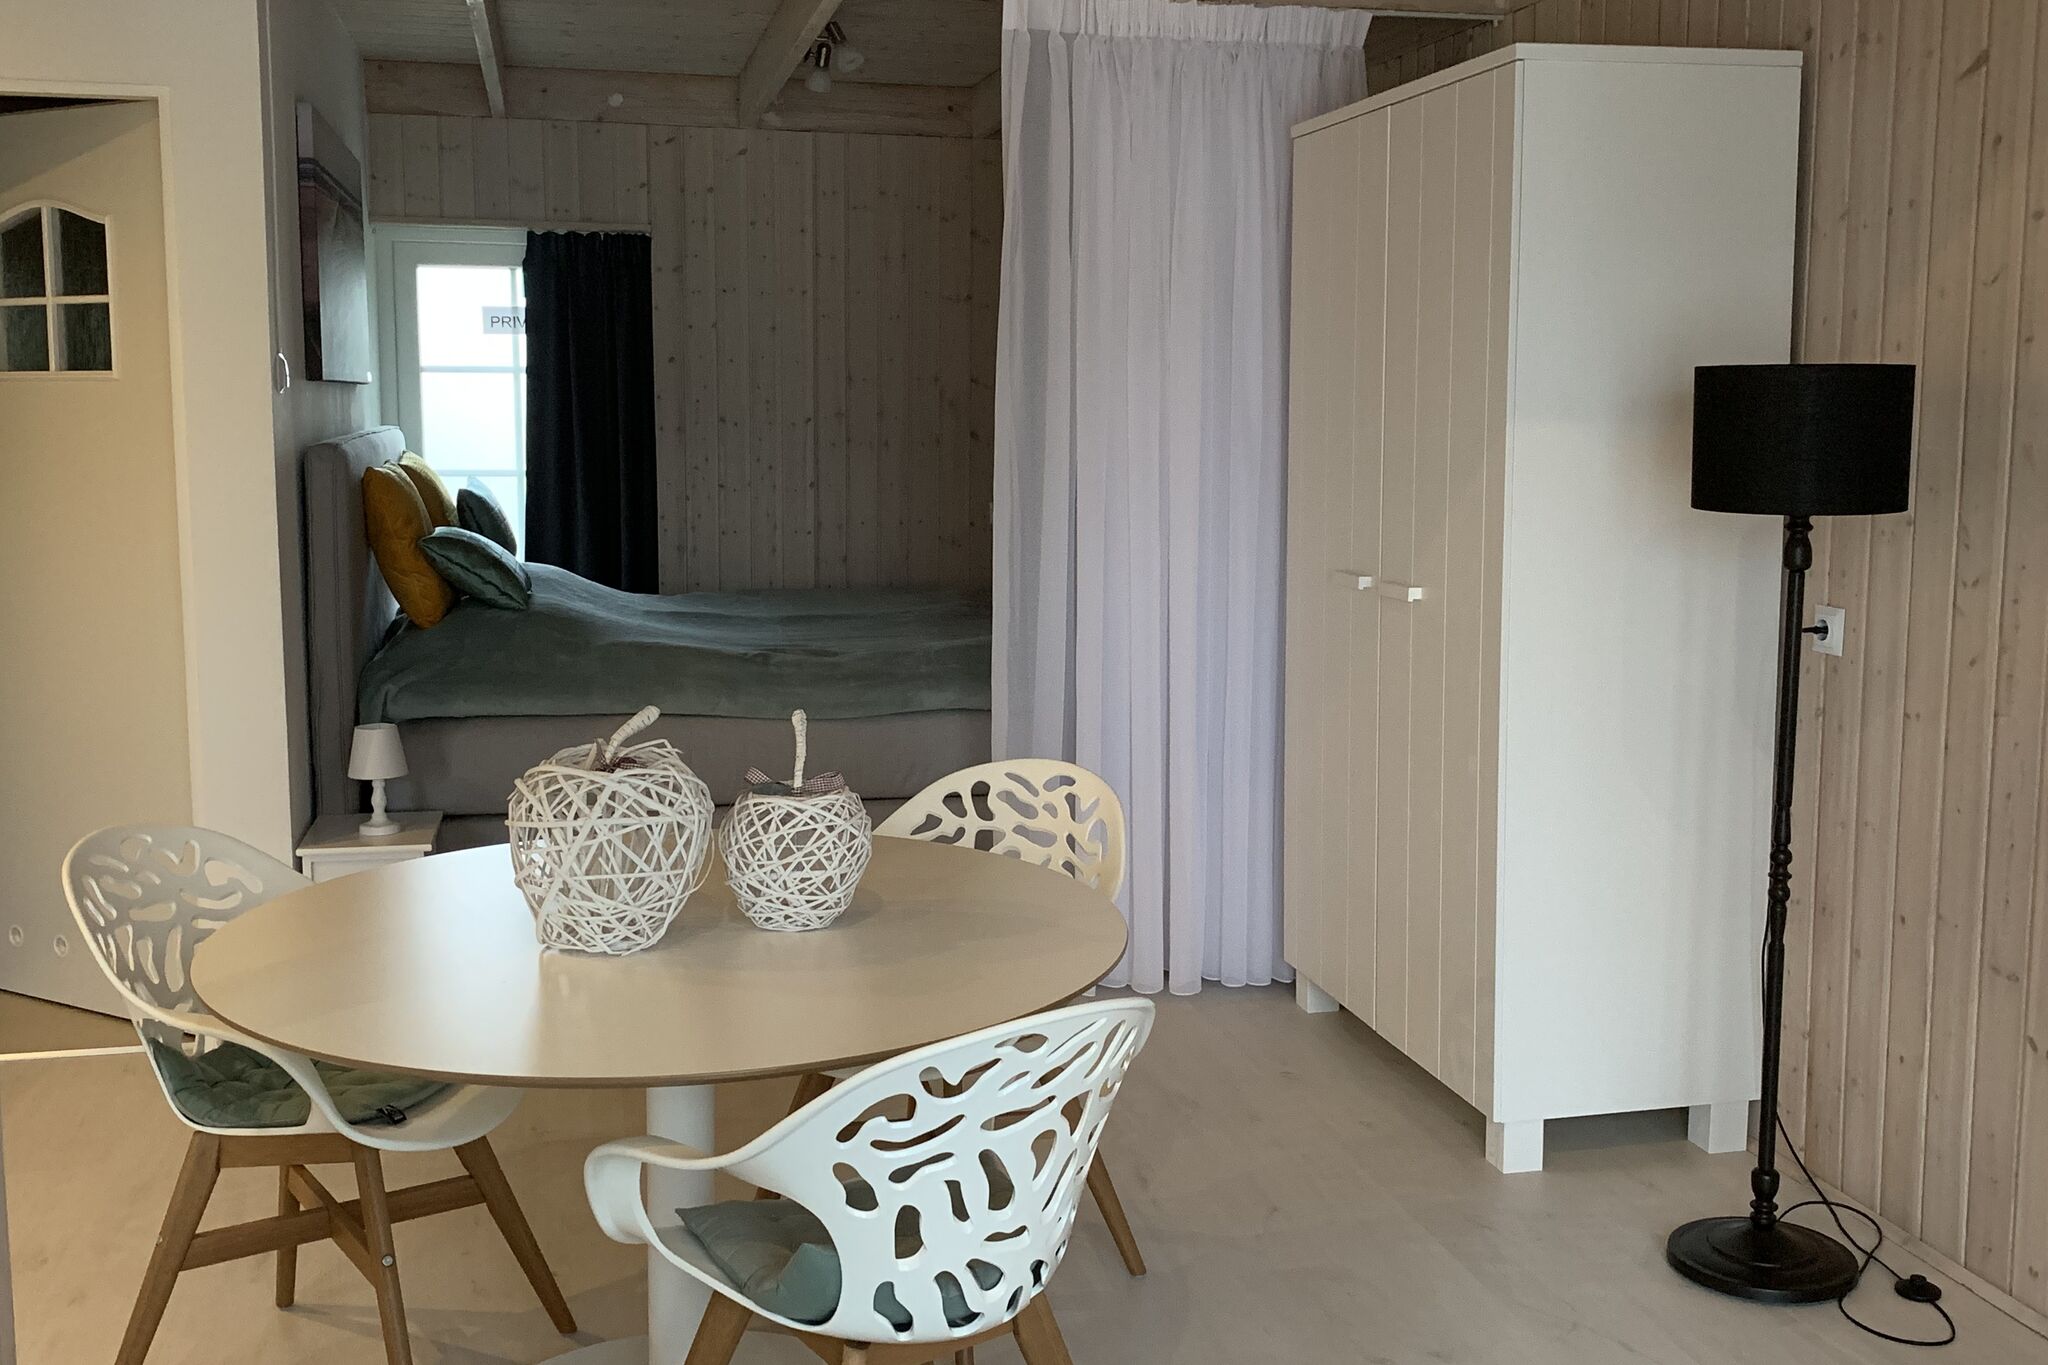 Joli et charmant studio, situé dans le centre de Zoutelande, à 150 m de la mer